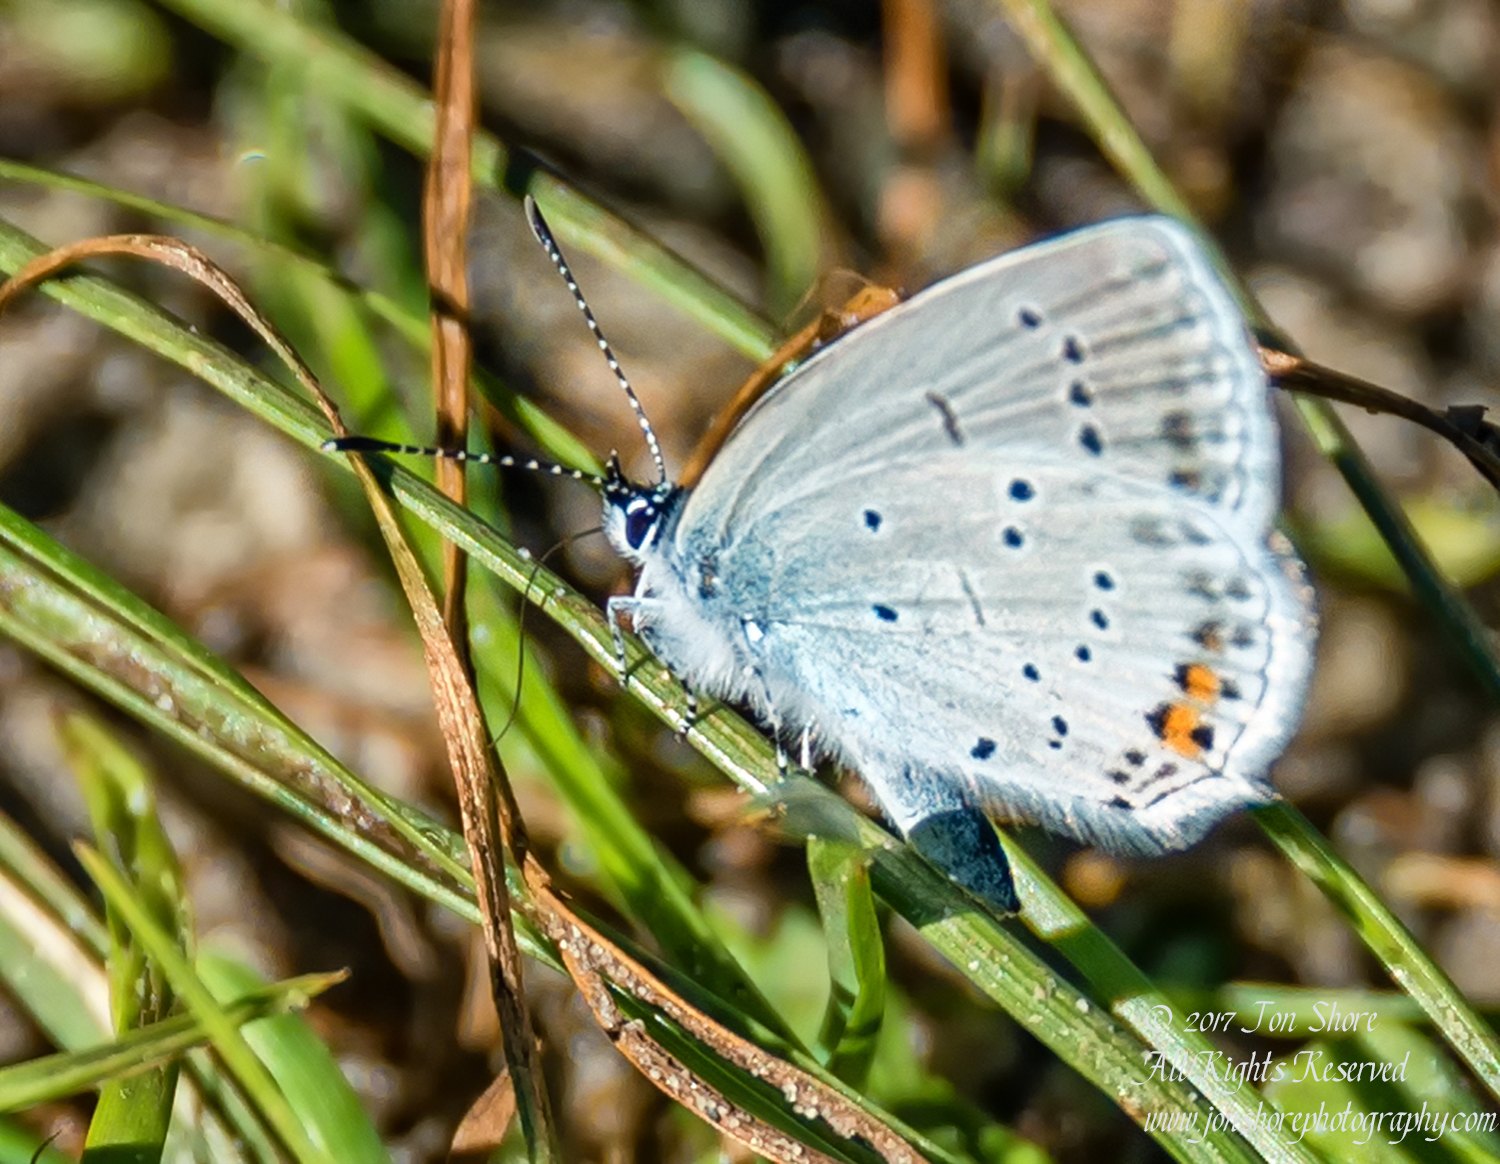 Butterfly Jurmala Latvia July 2017